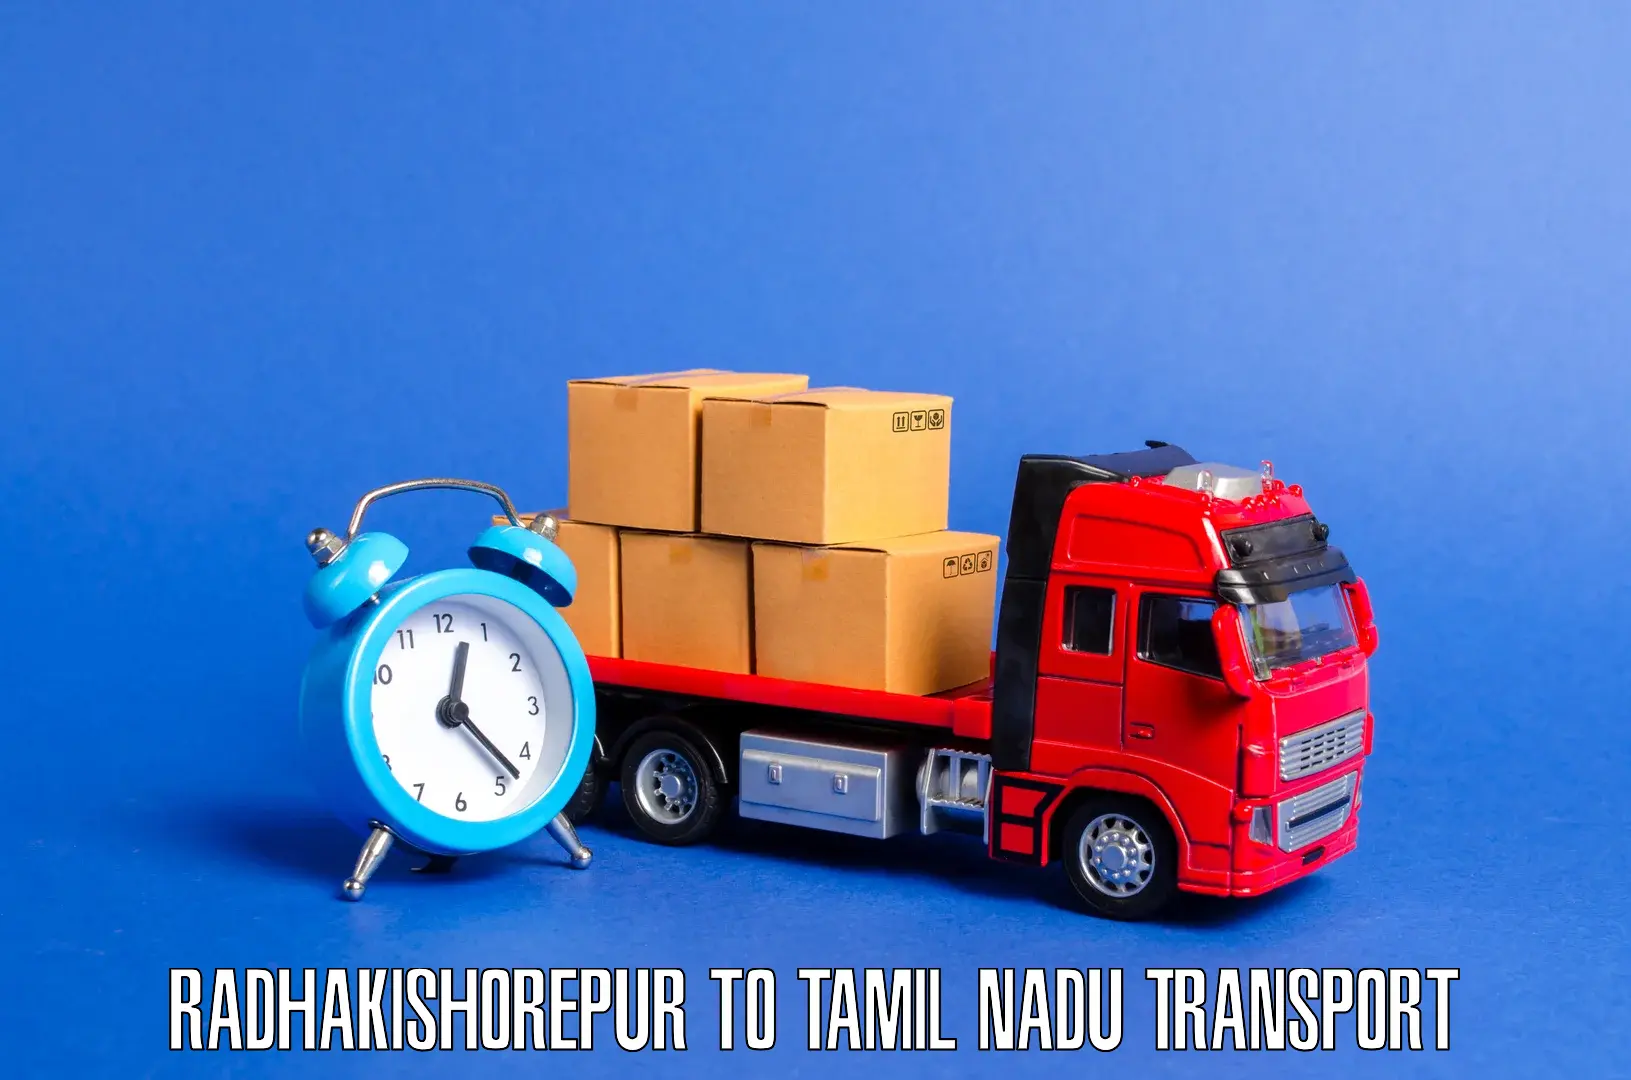 Pick up transport service Radhakishorepur to Ranipet